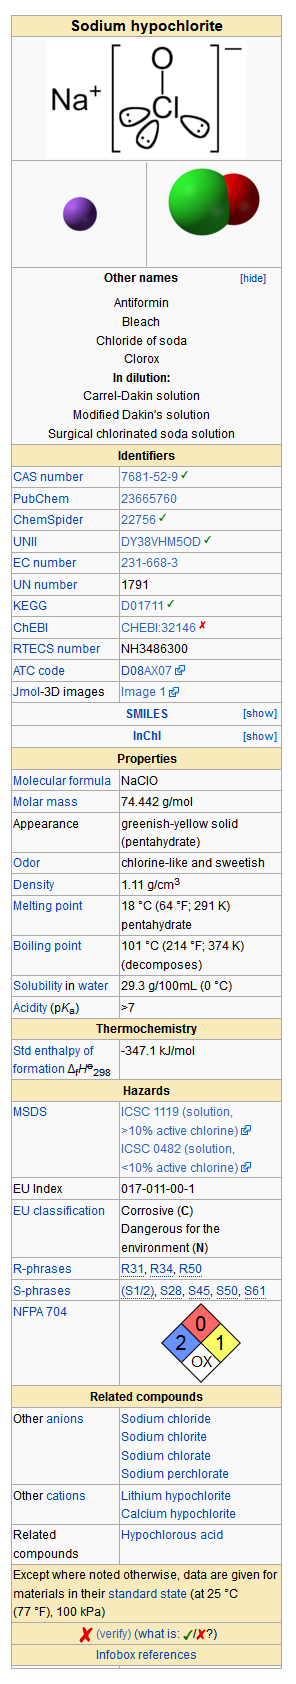 Sodium hypochlorite wiki.png